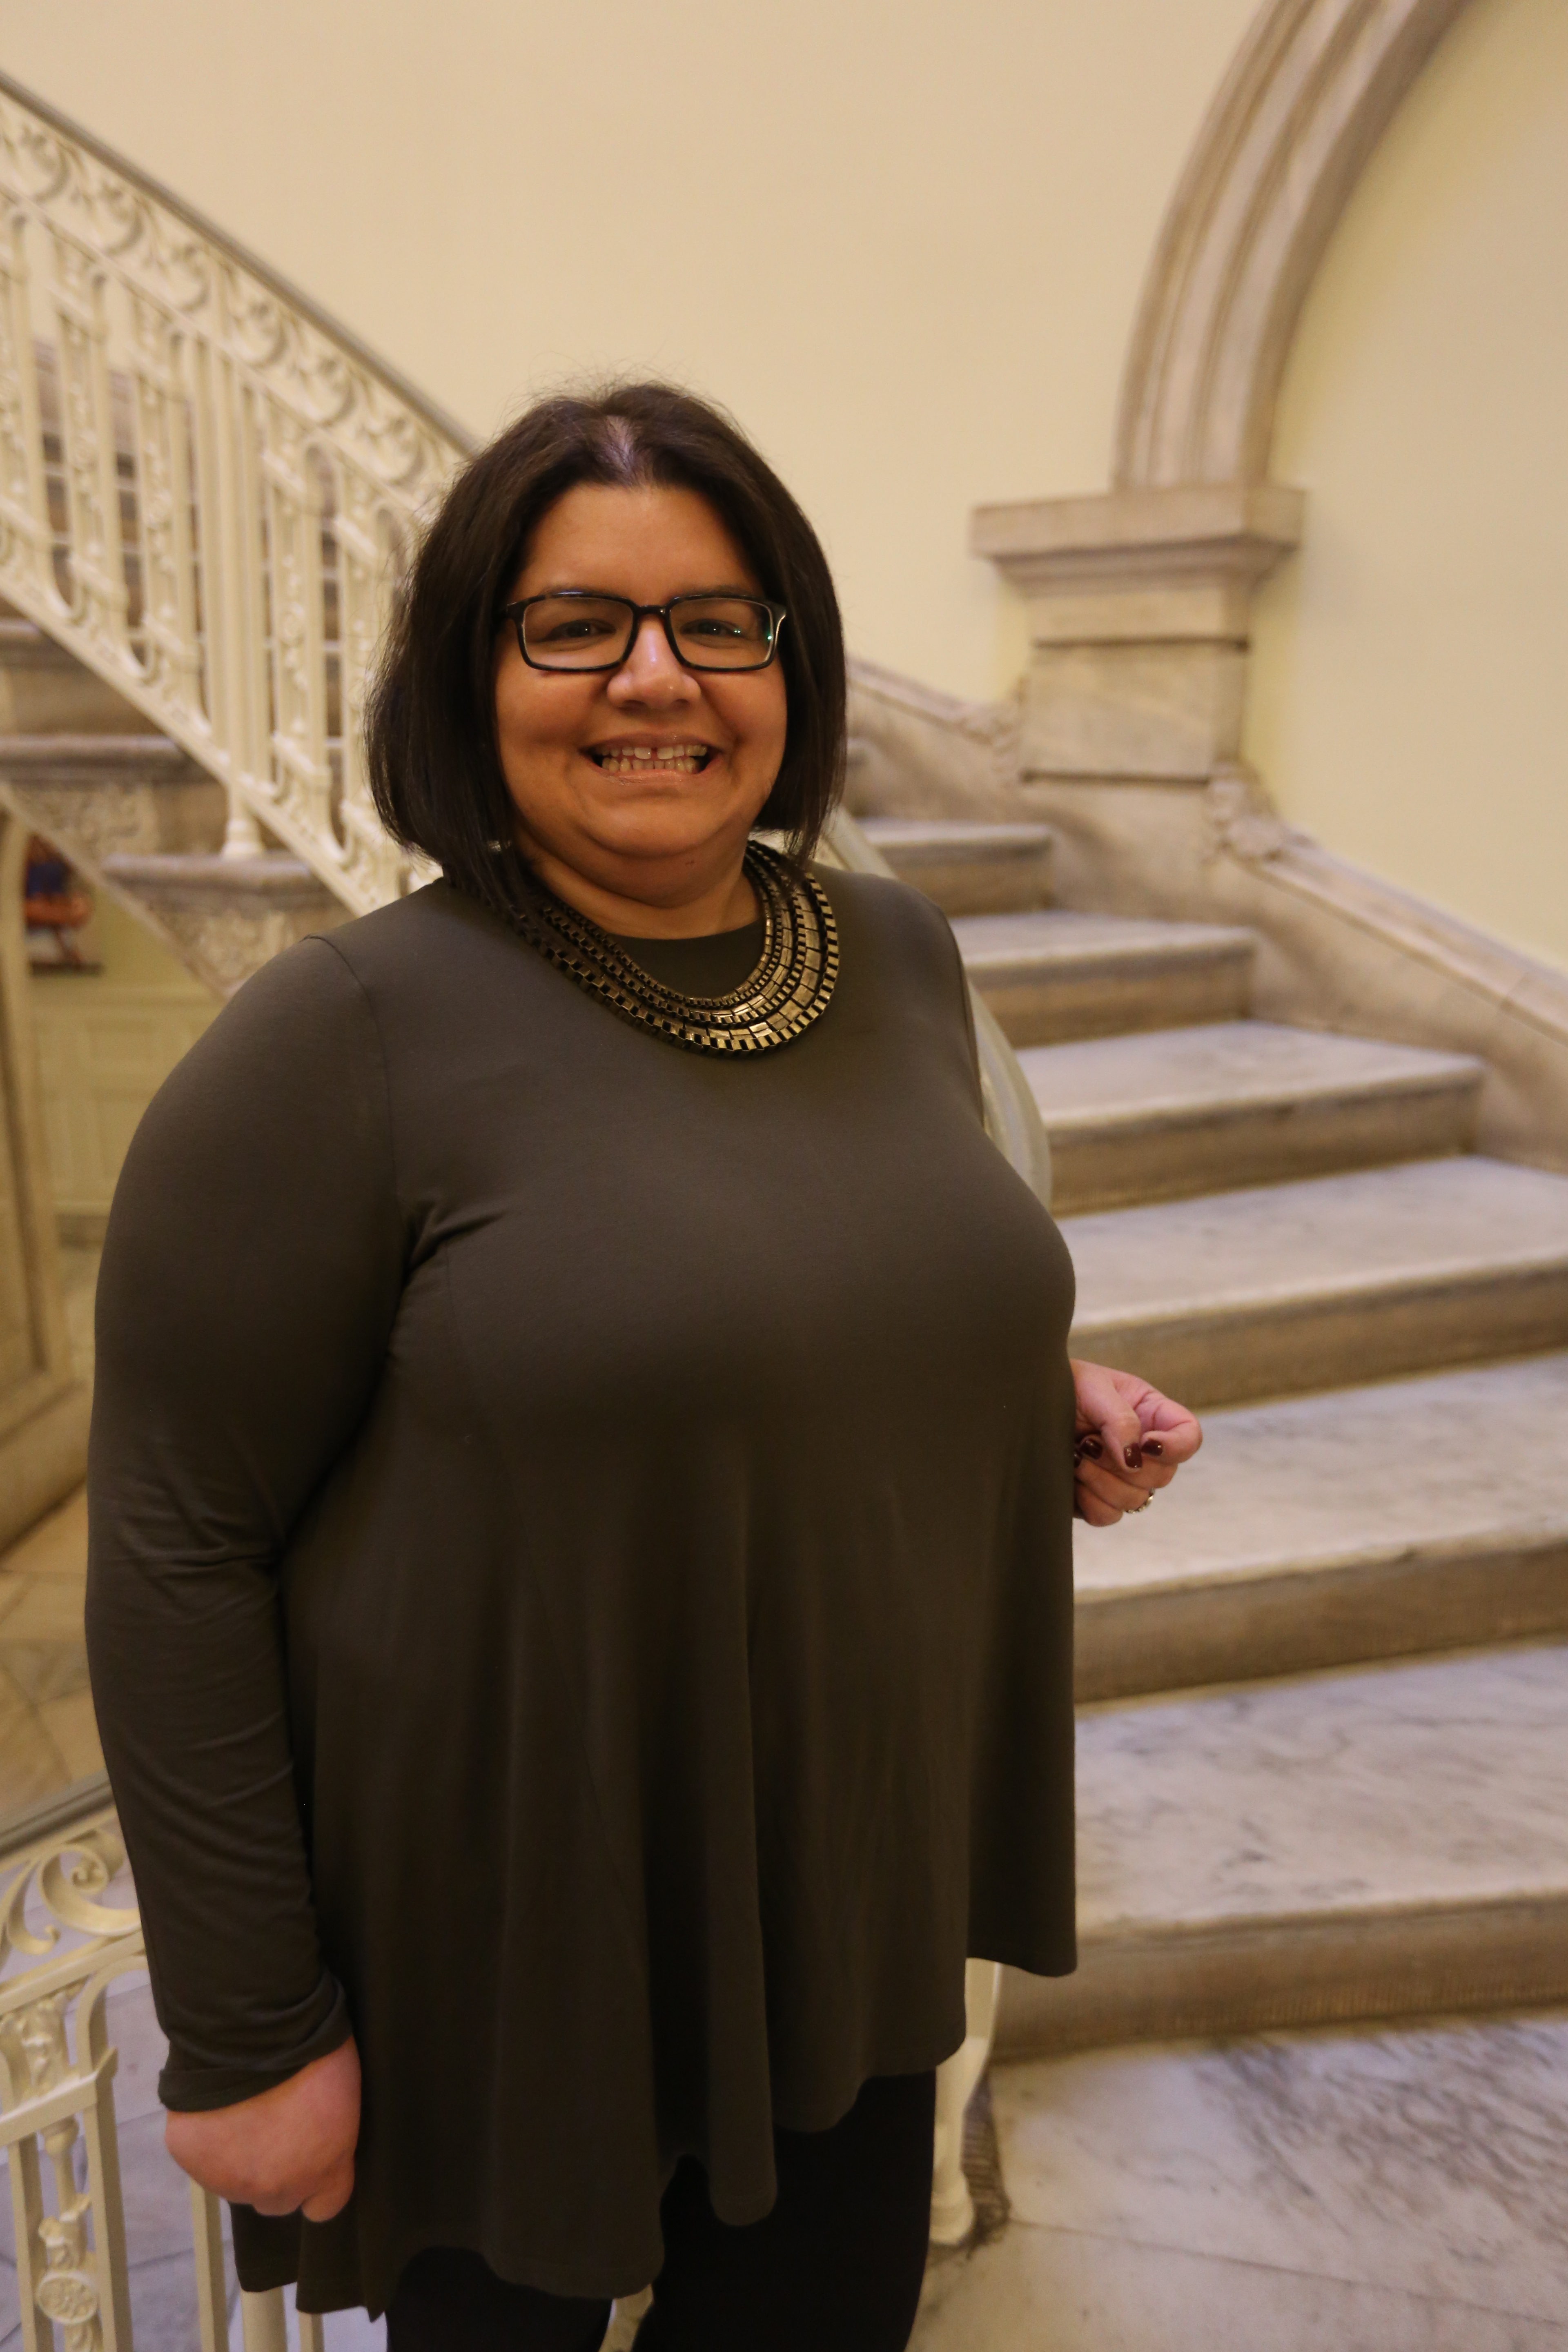 Prisca Salazar Rodriguez, Directora de Agenda de la Oficina del Alcalde. Mujeres en City Hall.